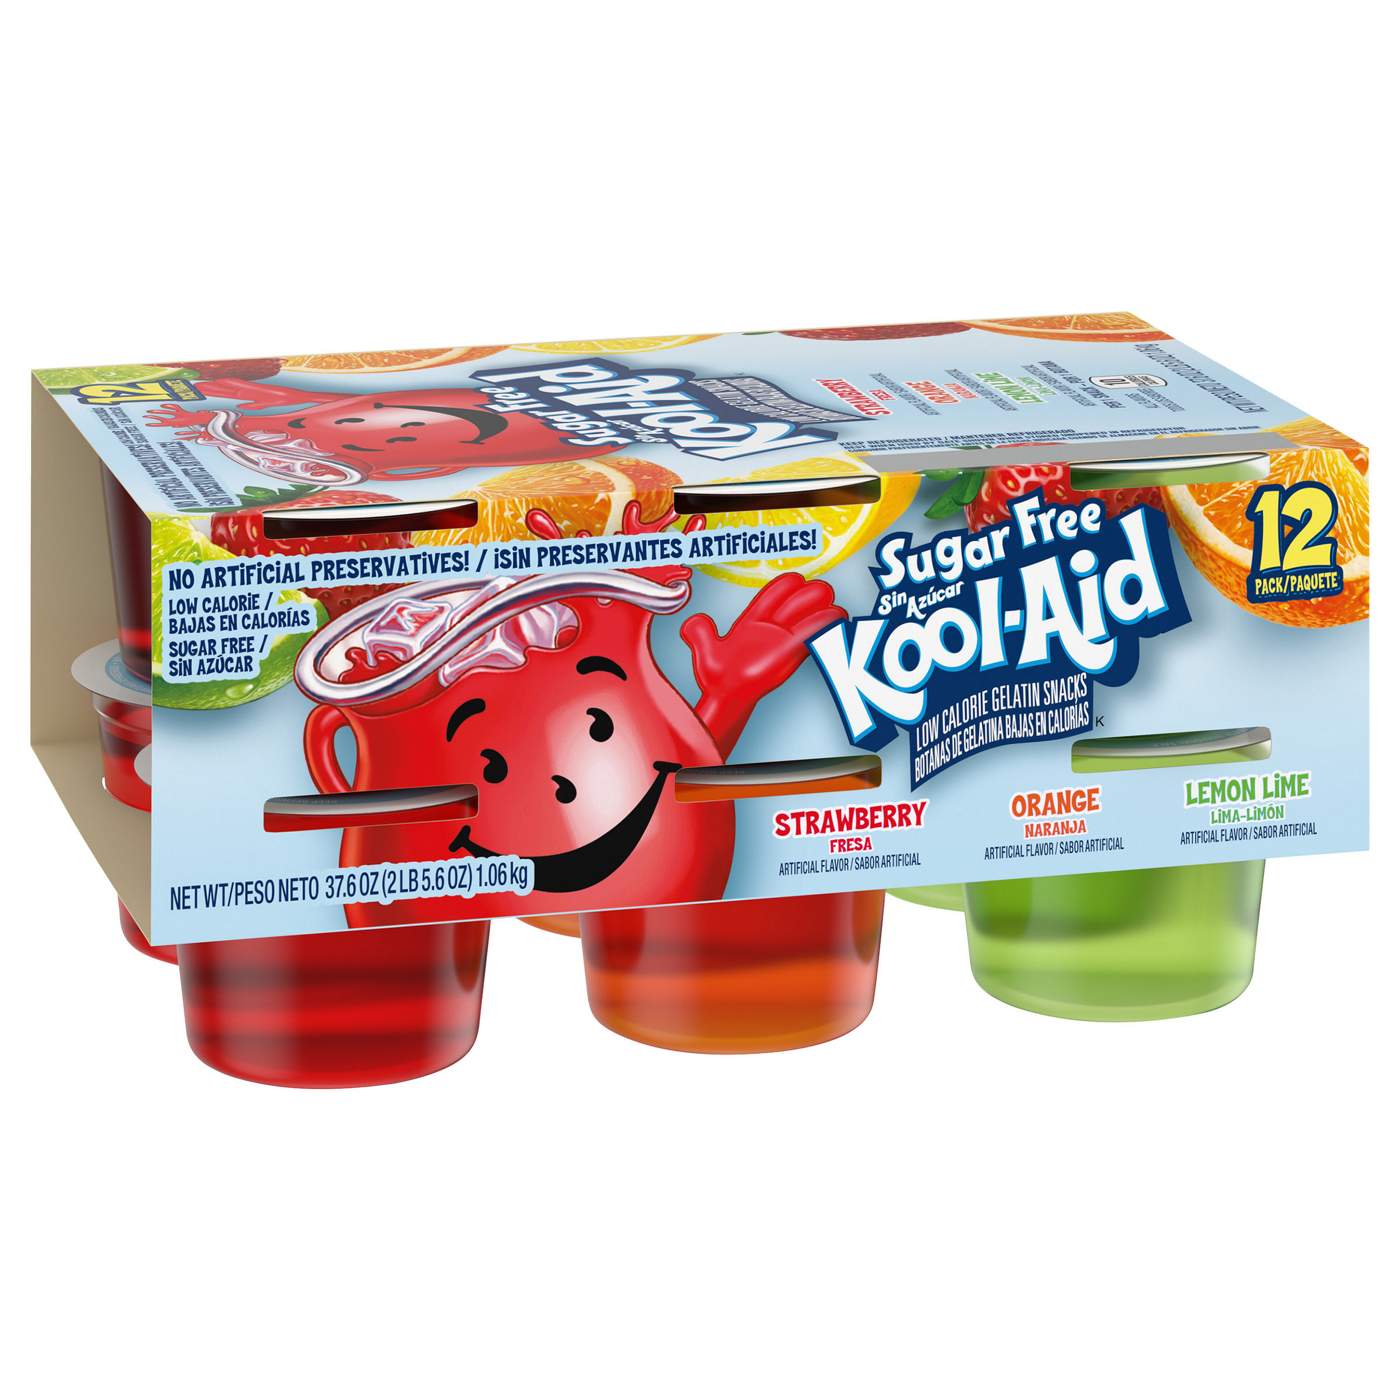 Kool-Aid Sugar Free Gelatin Snack Cups Variety Pack; image 2 of 2